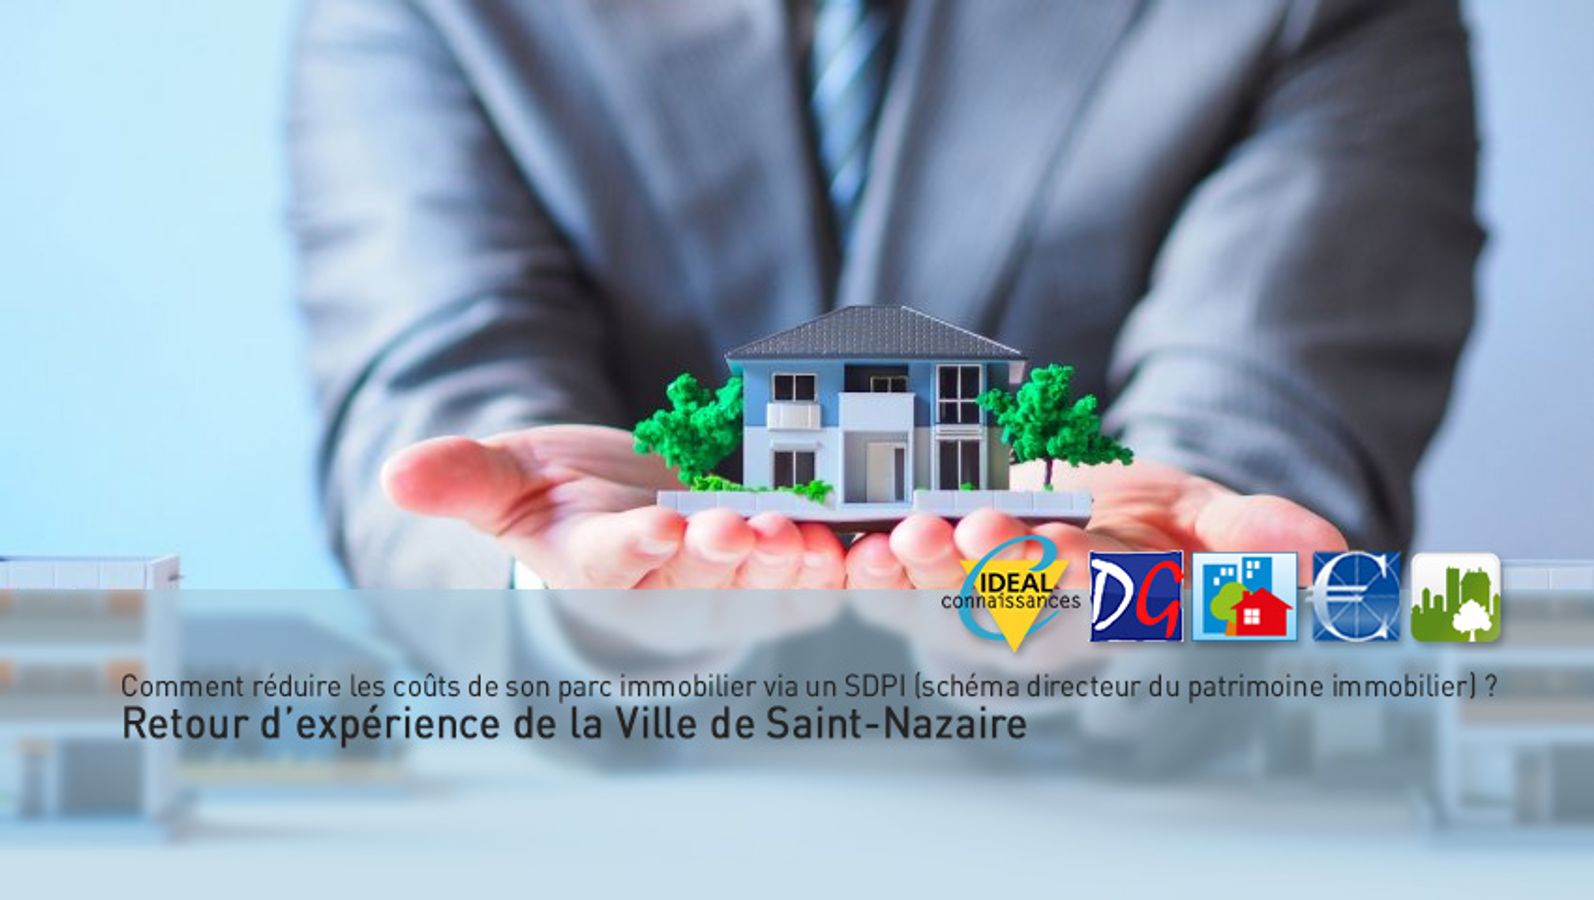 Comment réduire les coûts de son parc immobilier via un SDPI (schéma directeur du patrimoine immobilier) ? Retour d’expérience de la Ville de Saint-Nazaire